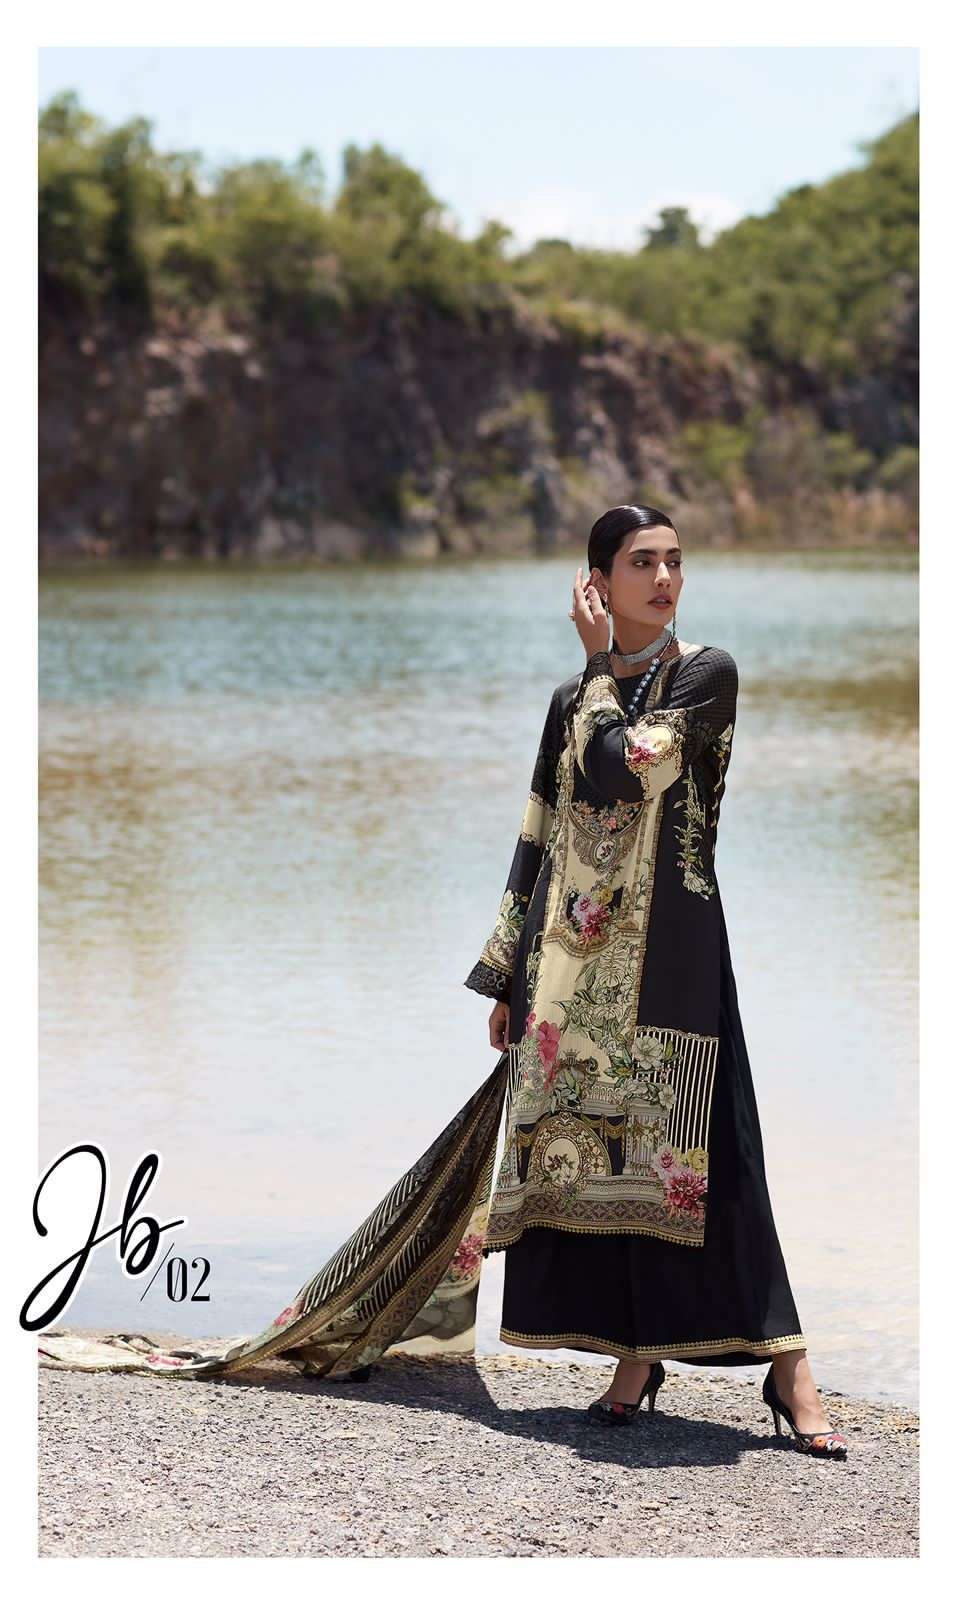 Varsha  Jashne e bahar  black & white  Pakistani Suits